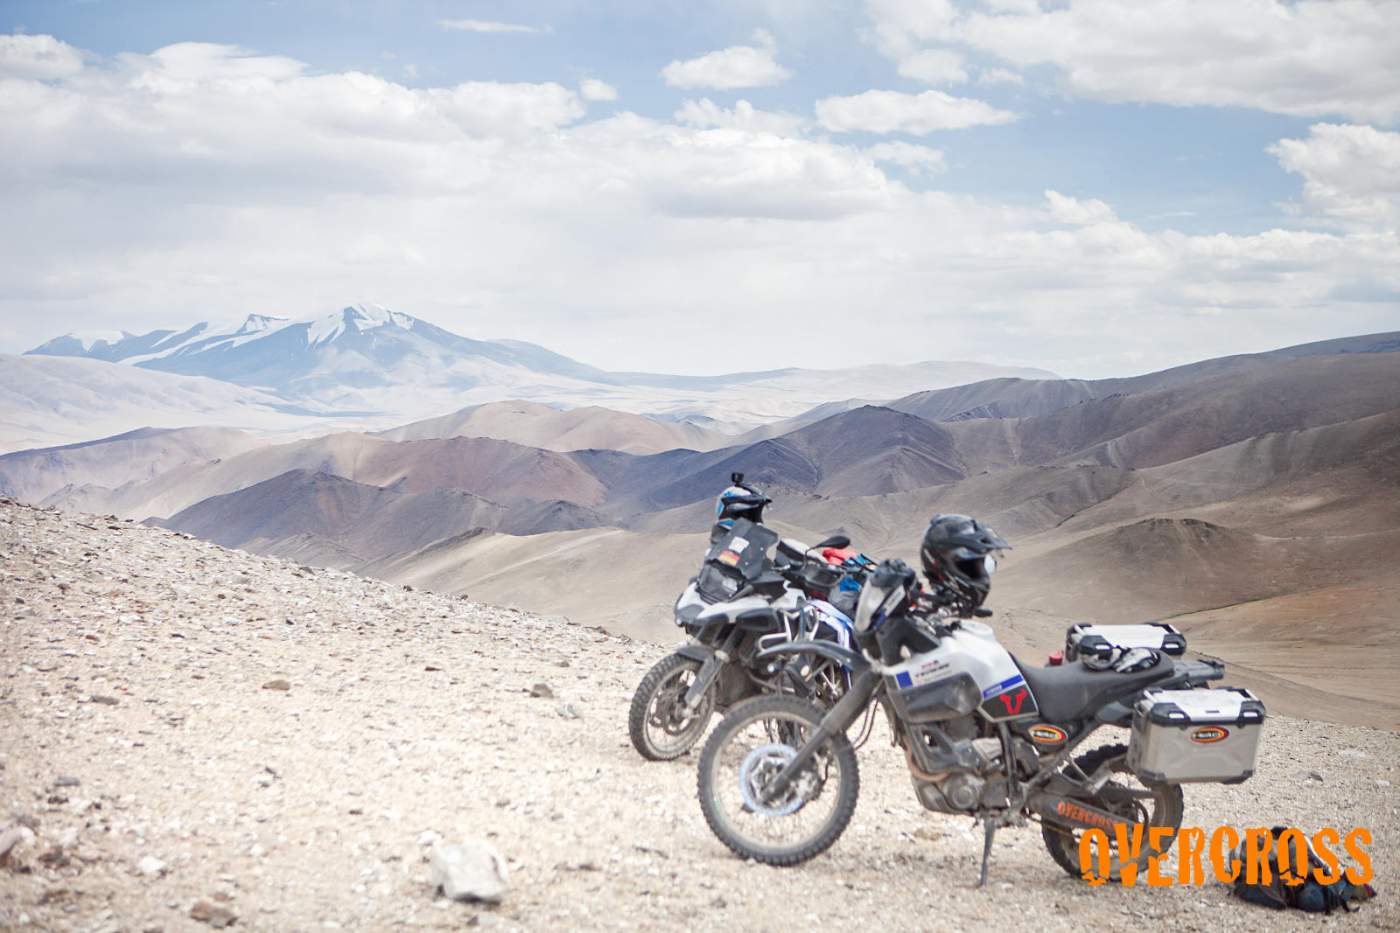 Auf dem Weg in die Mongolei durchfahren wir mit unseren Motorrädern das Altai Gebirge. Die Schönheit dieses asiatischen Hochgebirges lässt uns auf unserem Motorradabenteuer immer wieder staunen. 